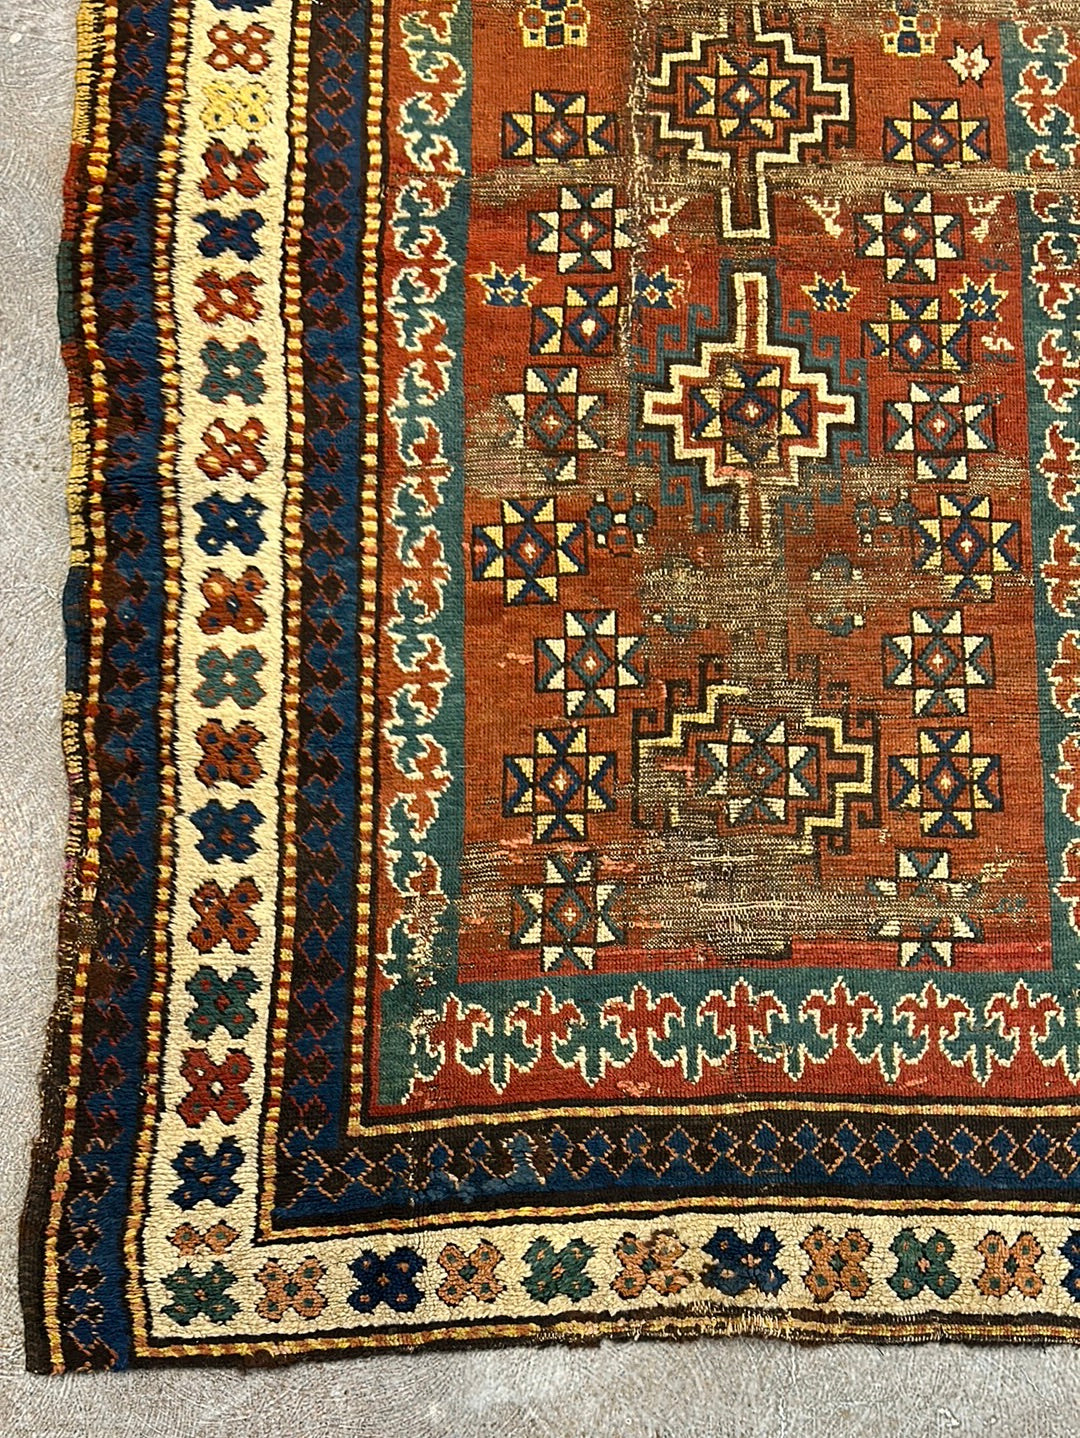  6'4" x 4' Antique Caucasian Kazak Rug - Rug & Weave